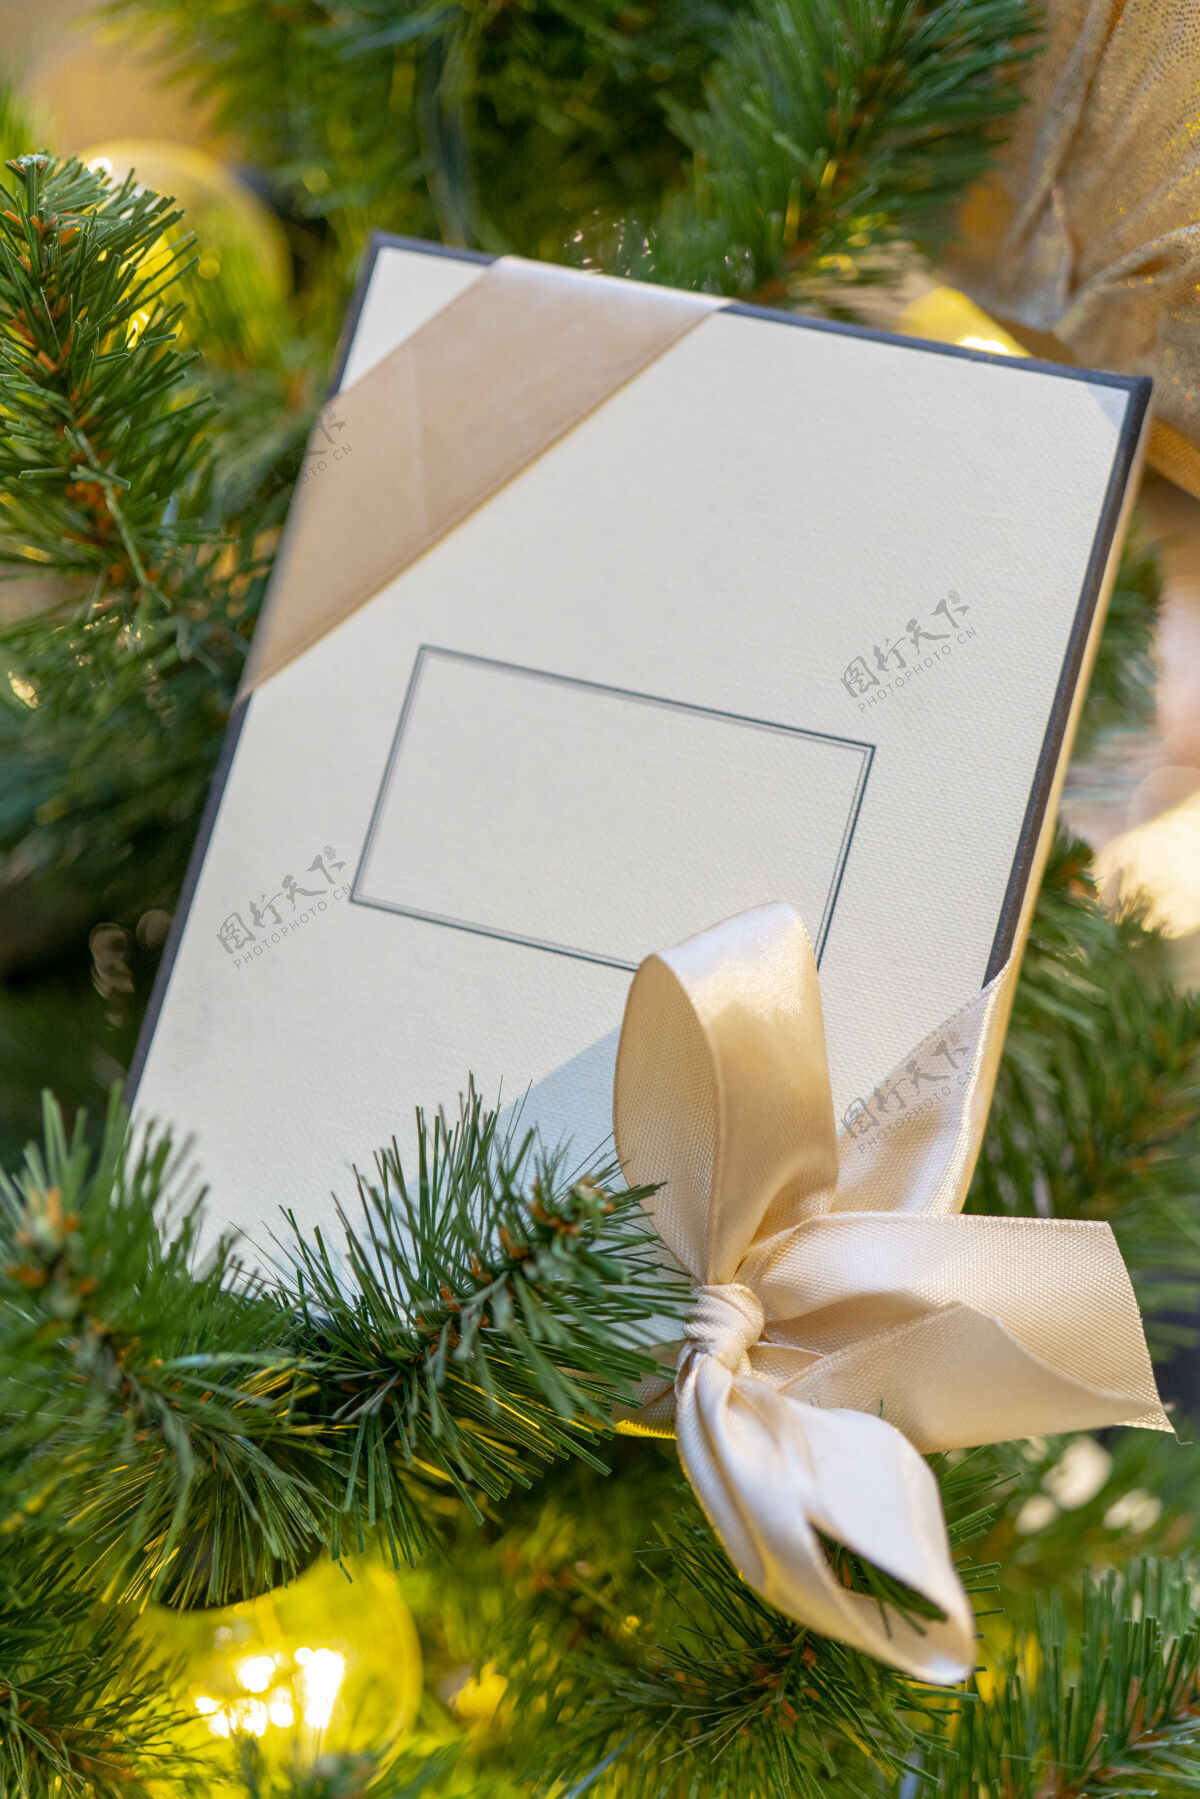 礼物白色礼品盒上有铭文 圣诞树装饰包装背景丝带